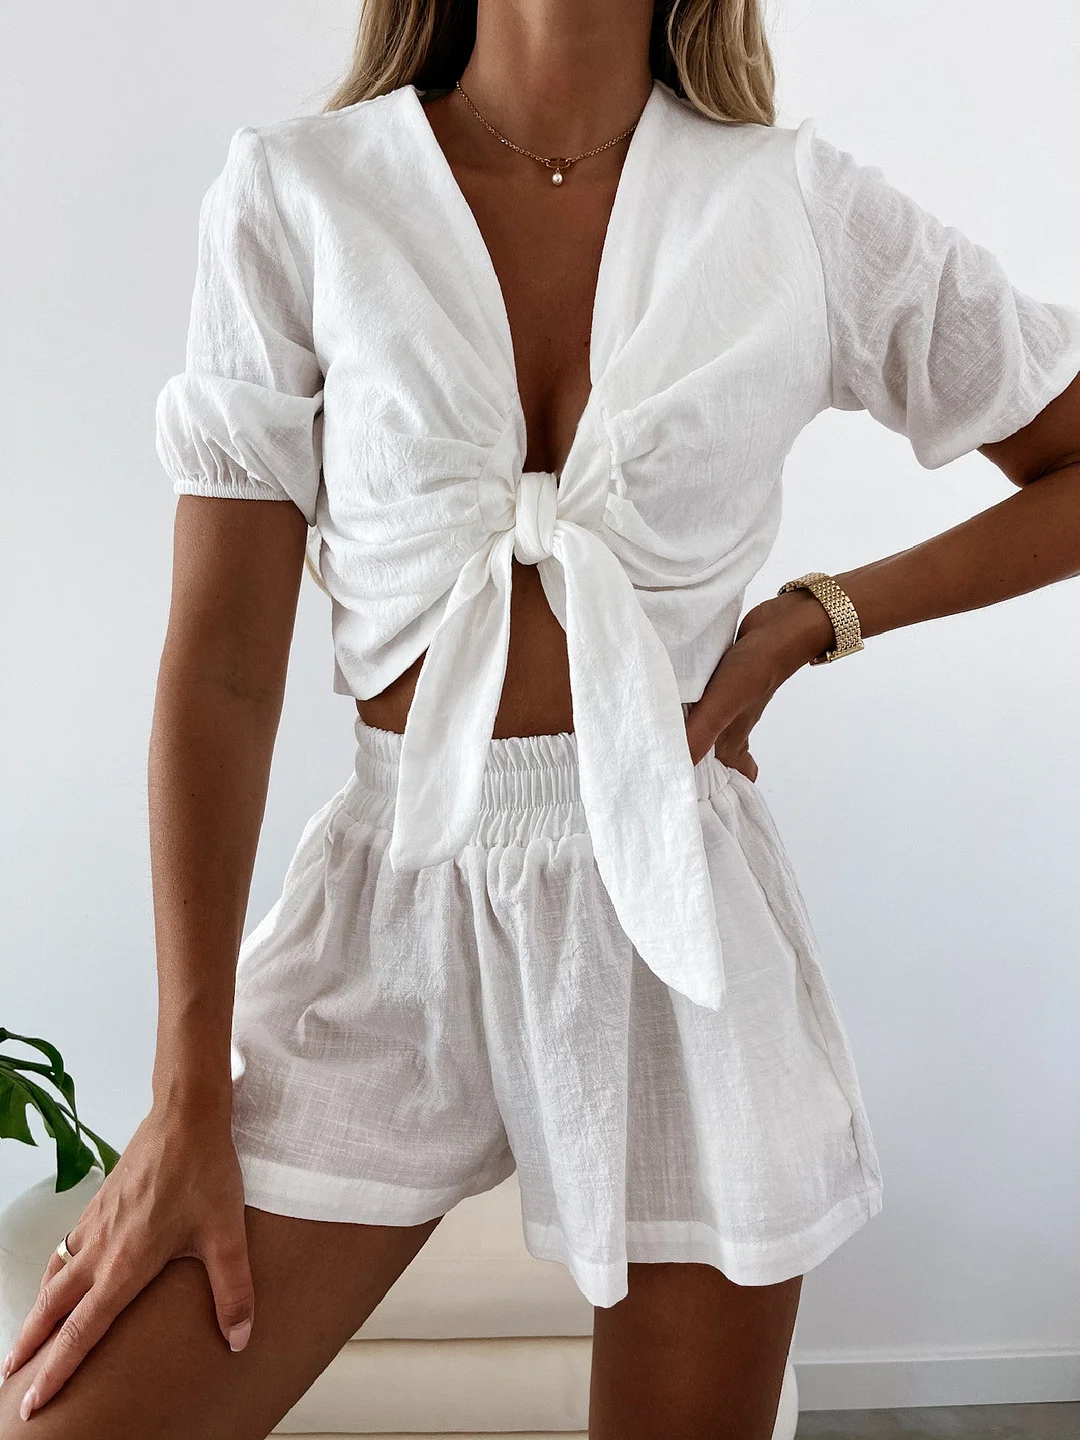 Style & Comfort for Mature Women Cotton Linen Blouse Bow Lace-up Set